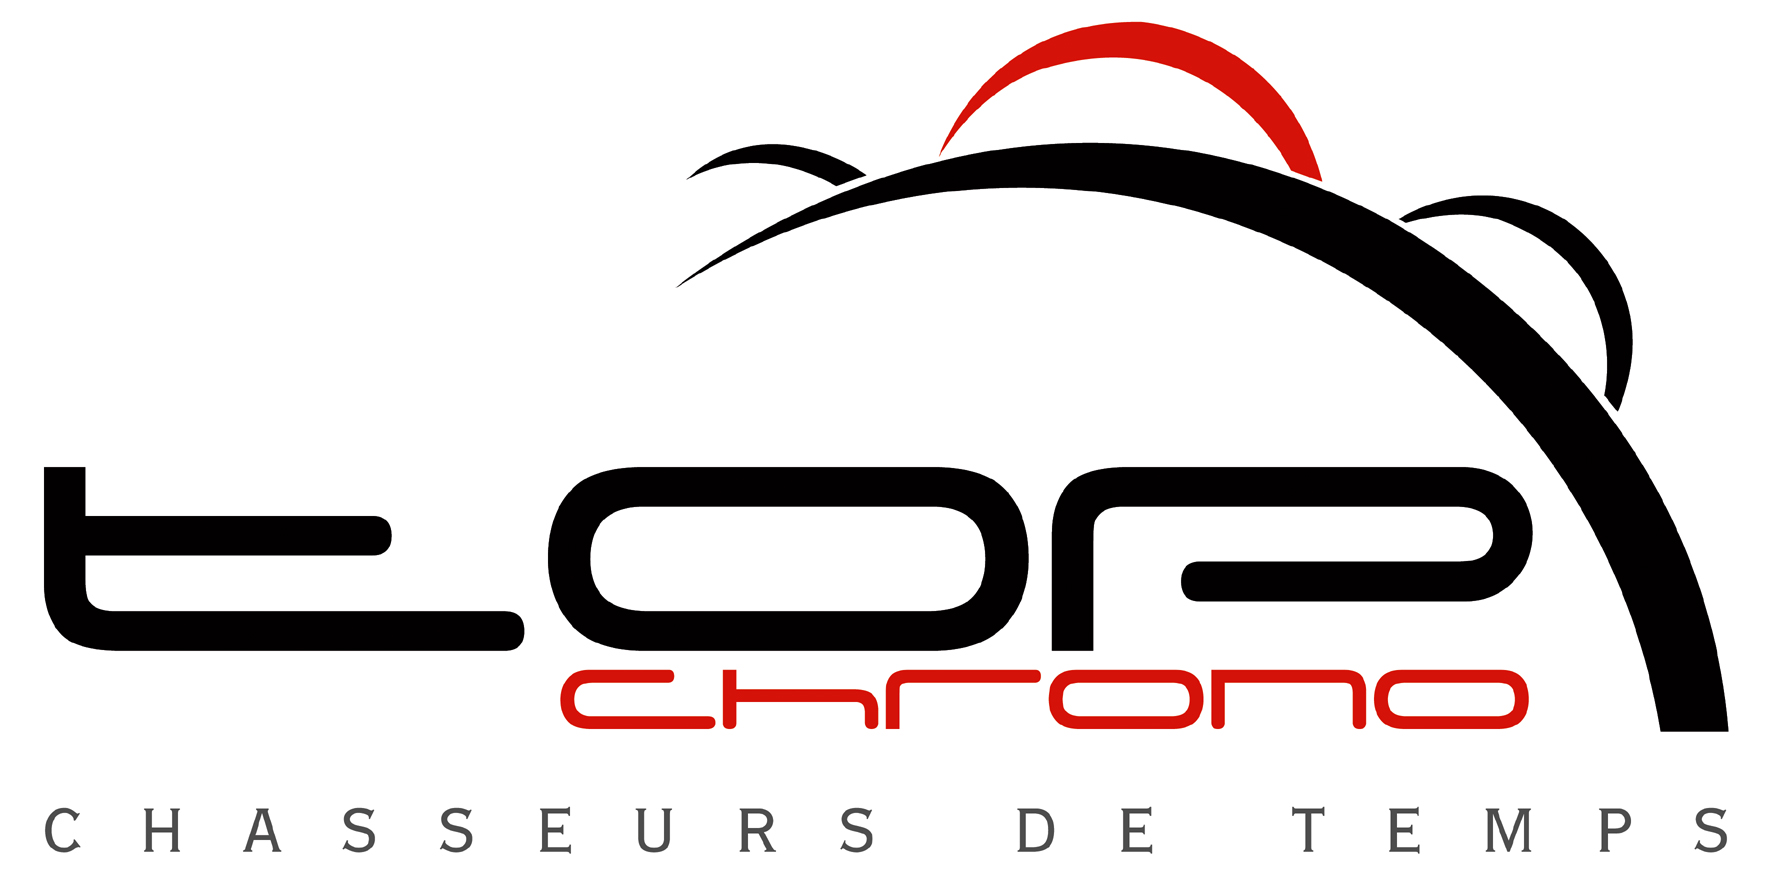 top chrono logo